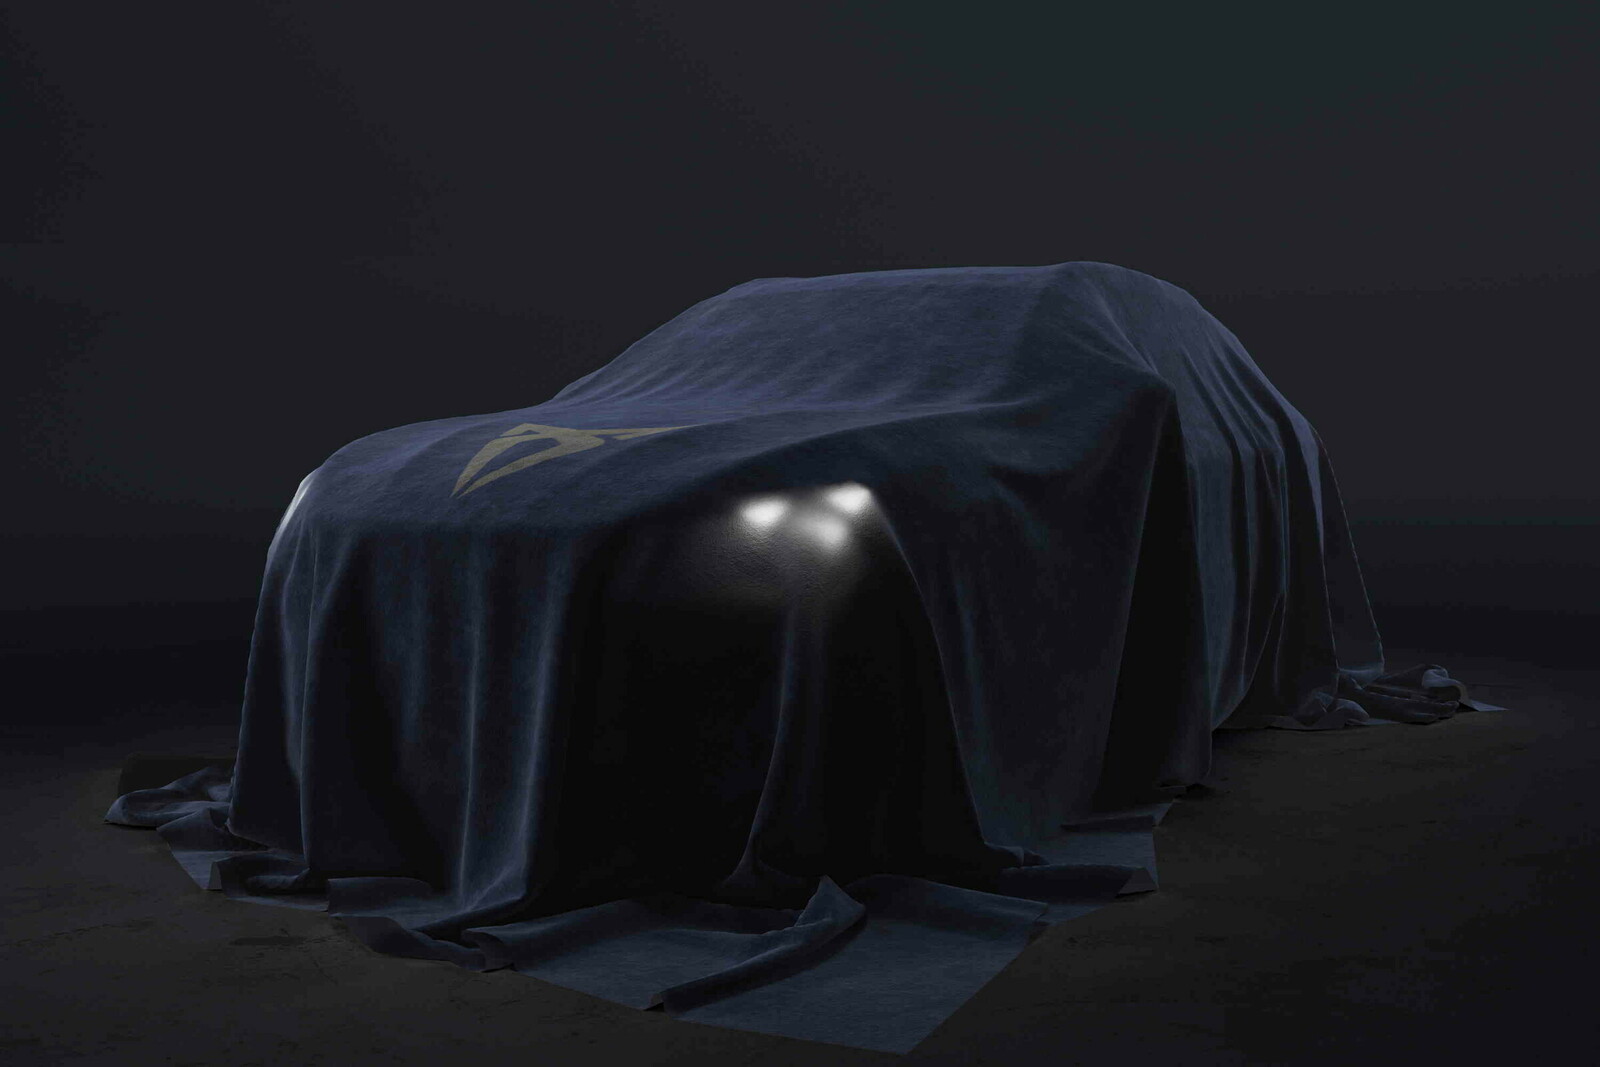 Unter dem Tuch verbirgt sich Cupras Zukunft: Auf Basis des Audi Q3 Sportback wird ein SUV-Coupé entstehen, das in Ungarn produziert werden soll.